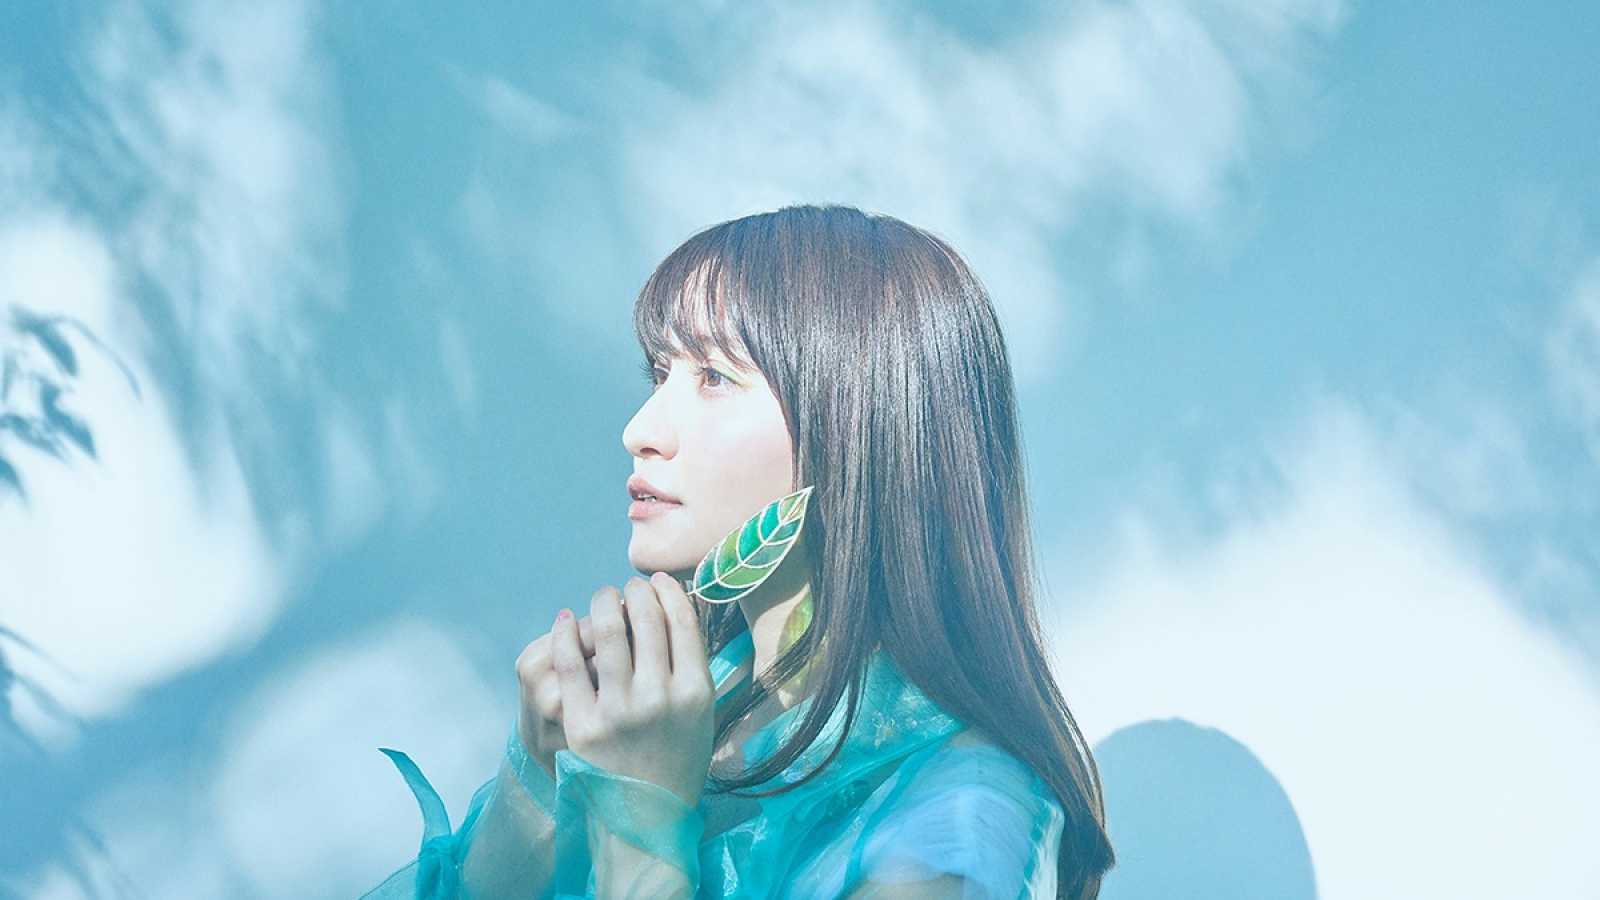 Novo álbum de Megumi Nakajima © FlyingDog, Inc. All rights reserved.